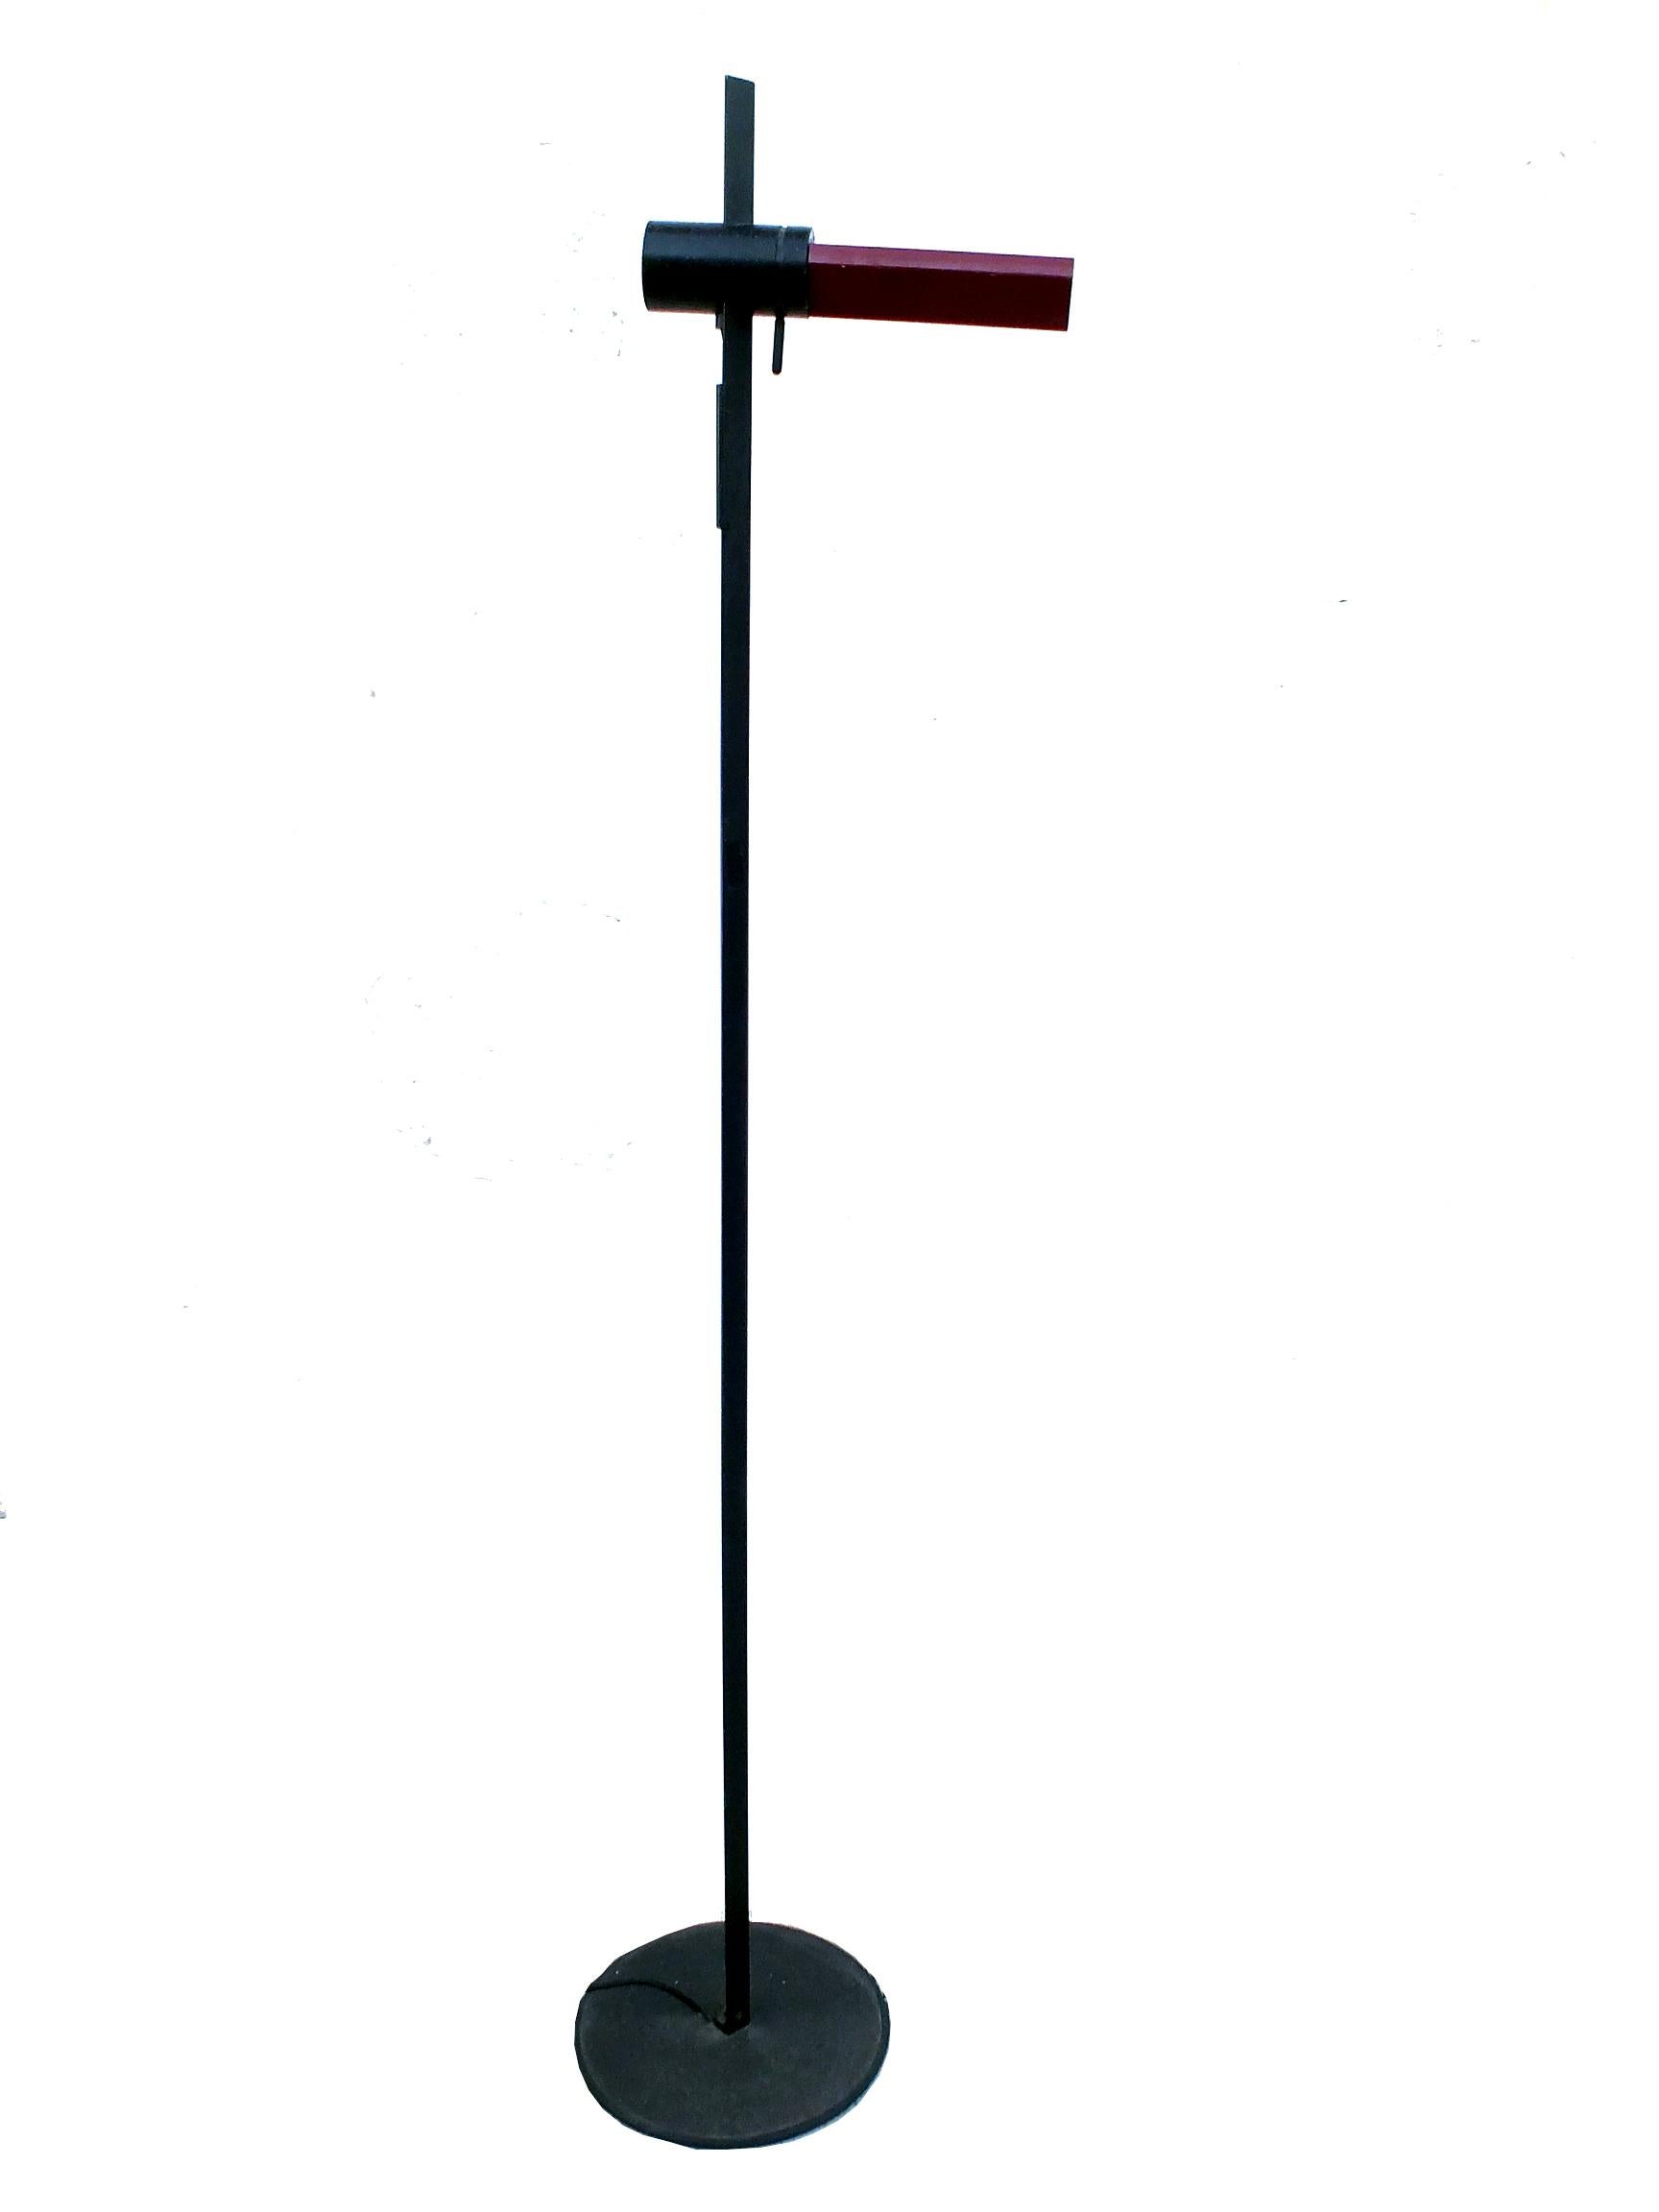 Italian Vintage Caltha Floor Lamp Luci by Frattini Italy 1978 For Sale